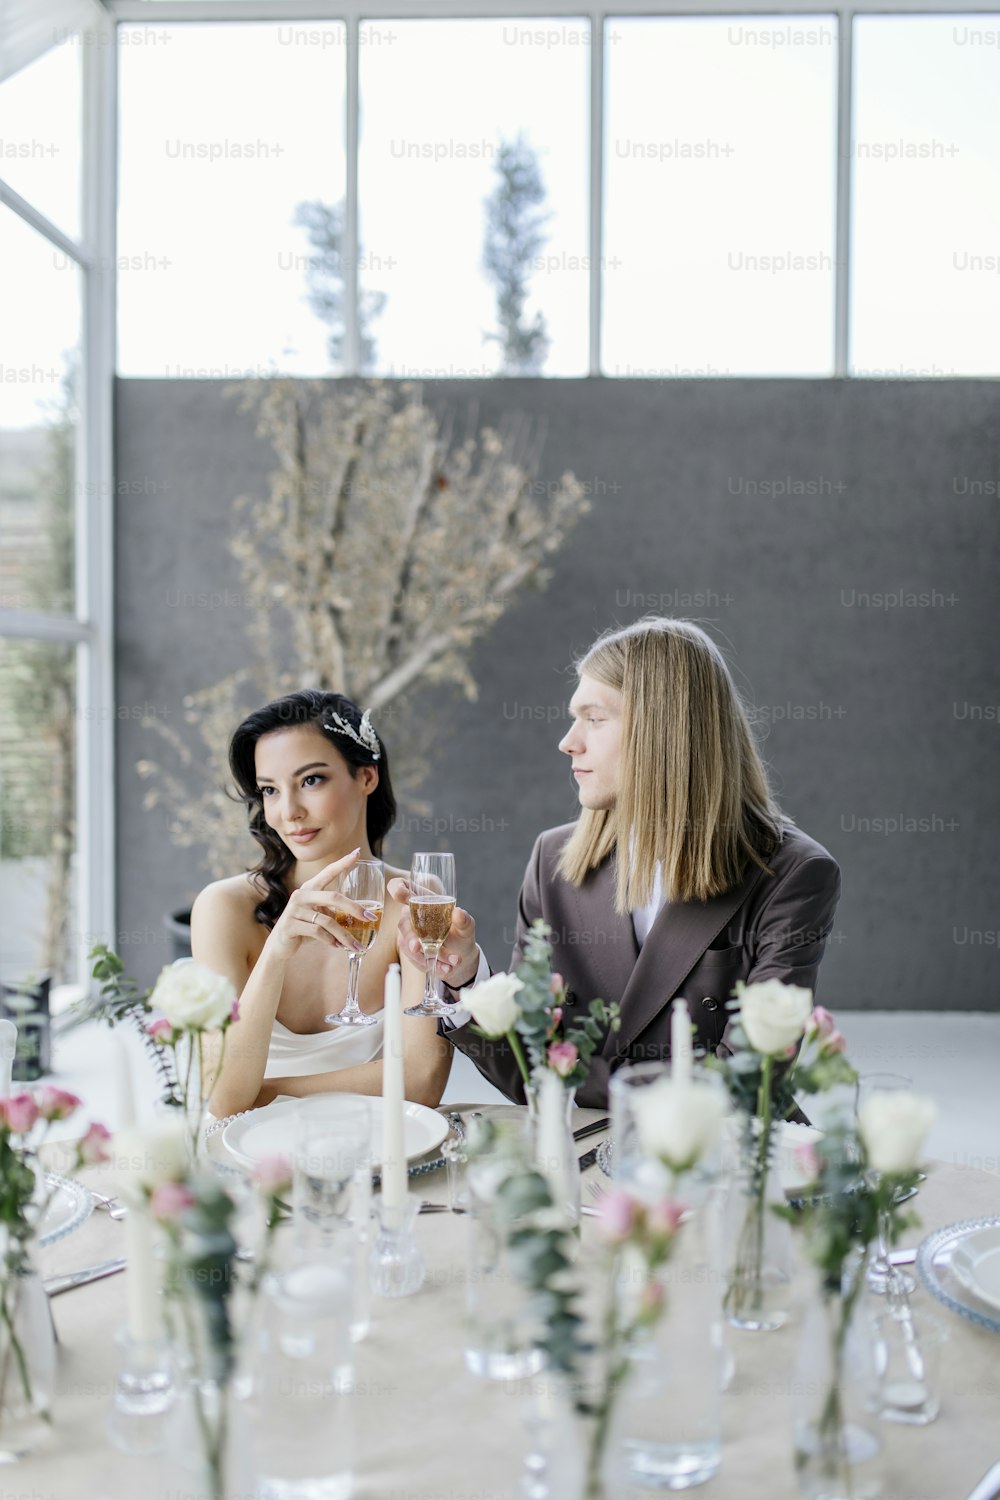 due donne che si siedono ad un tavolo con i bicchieri di vino